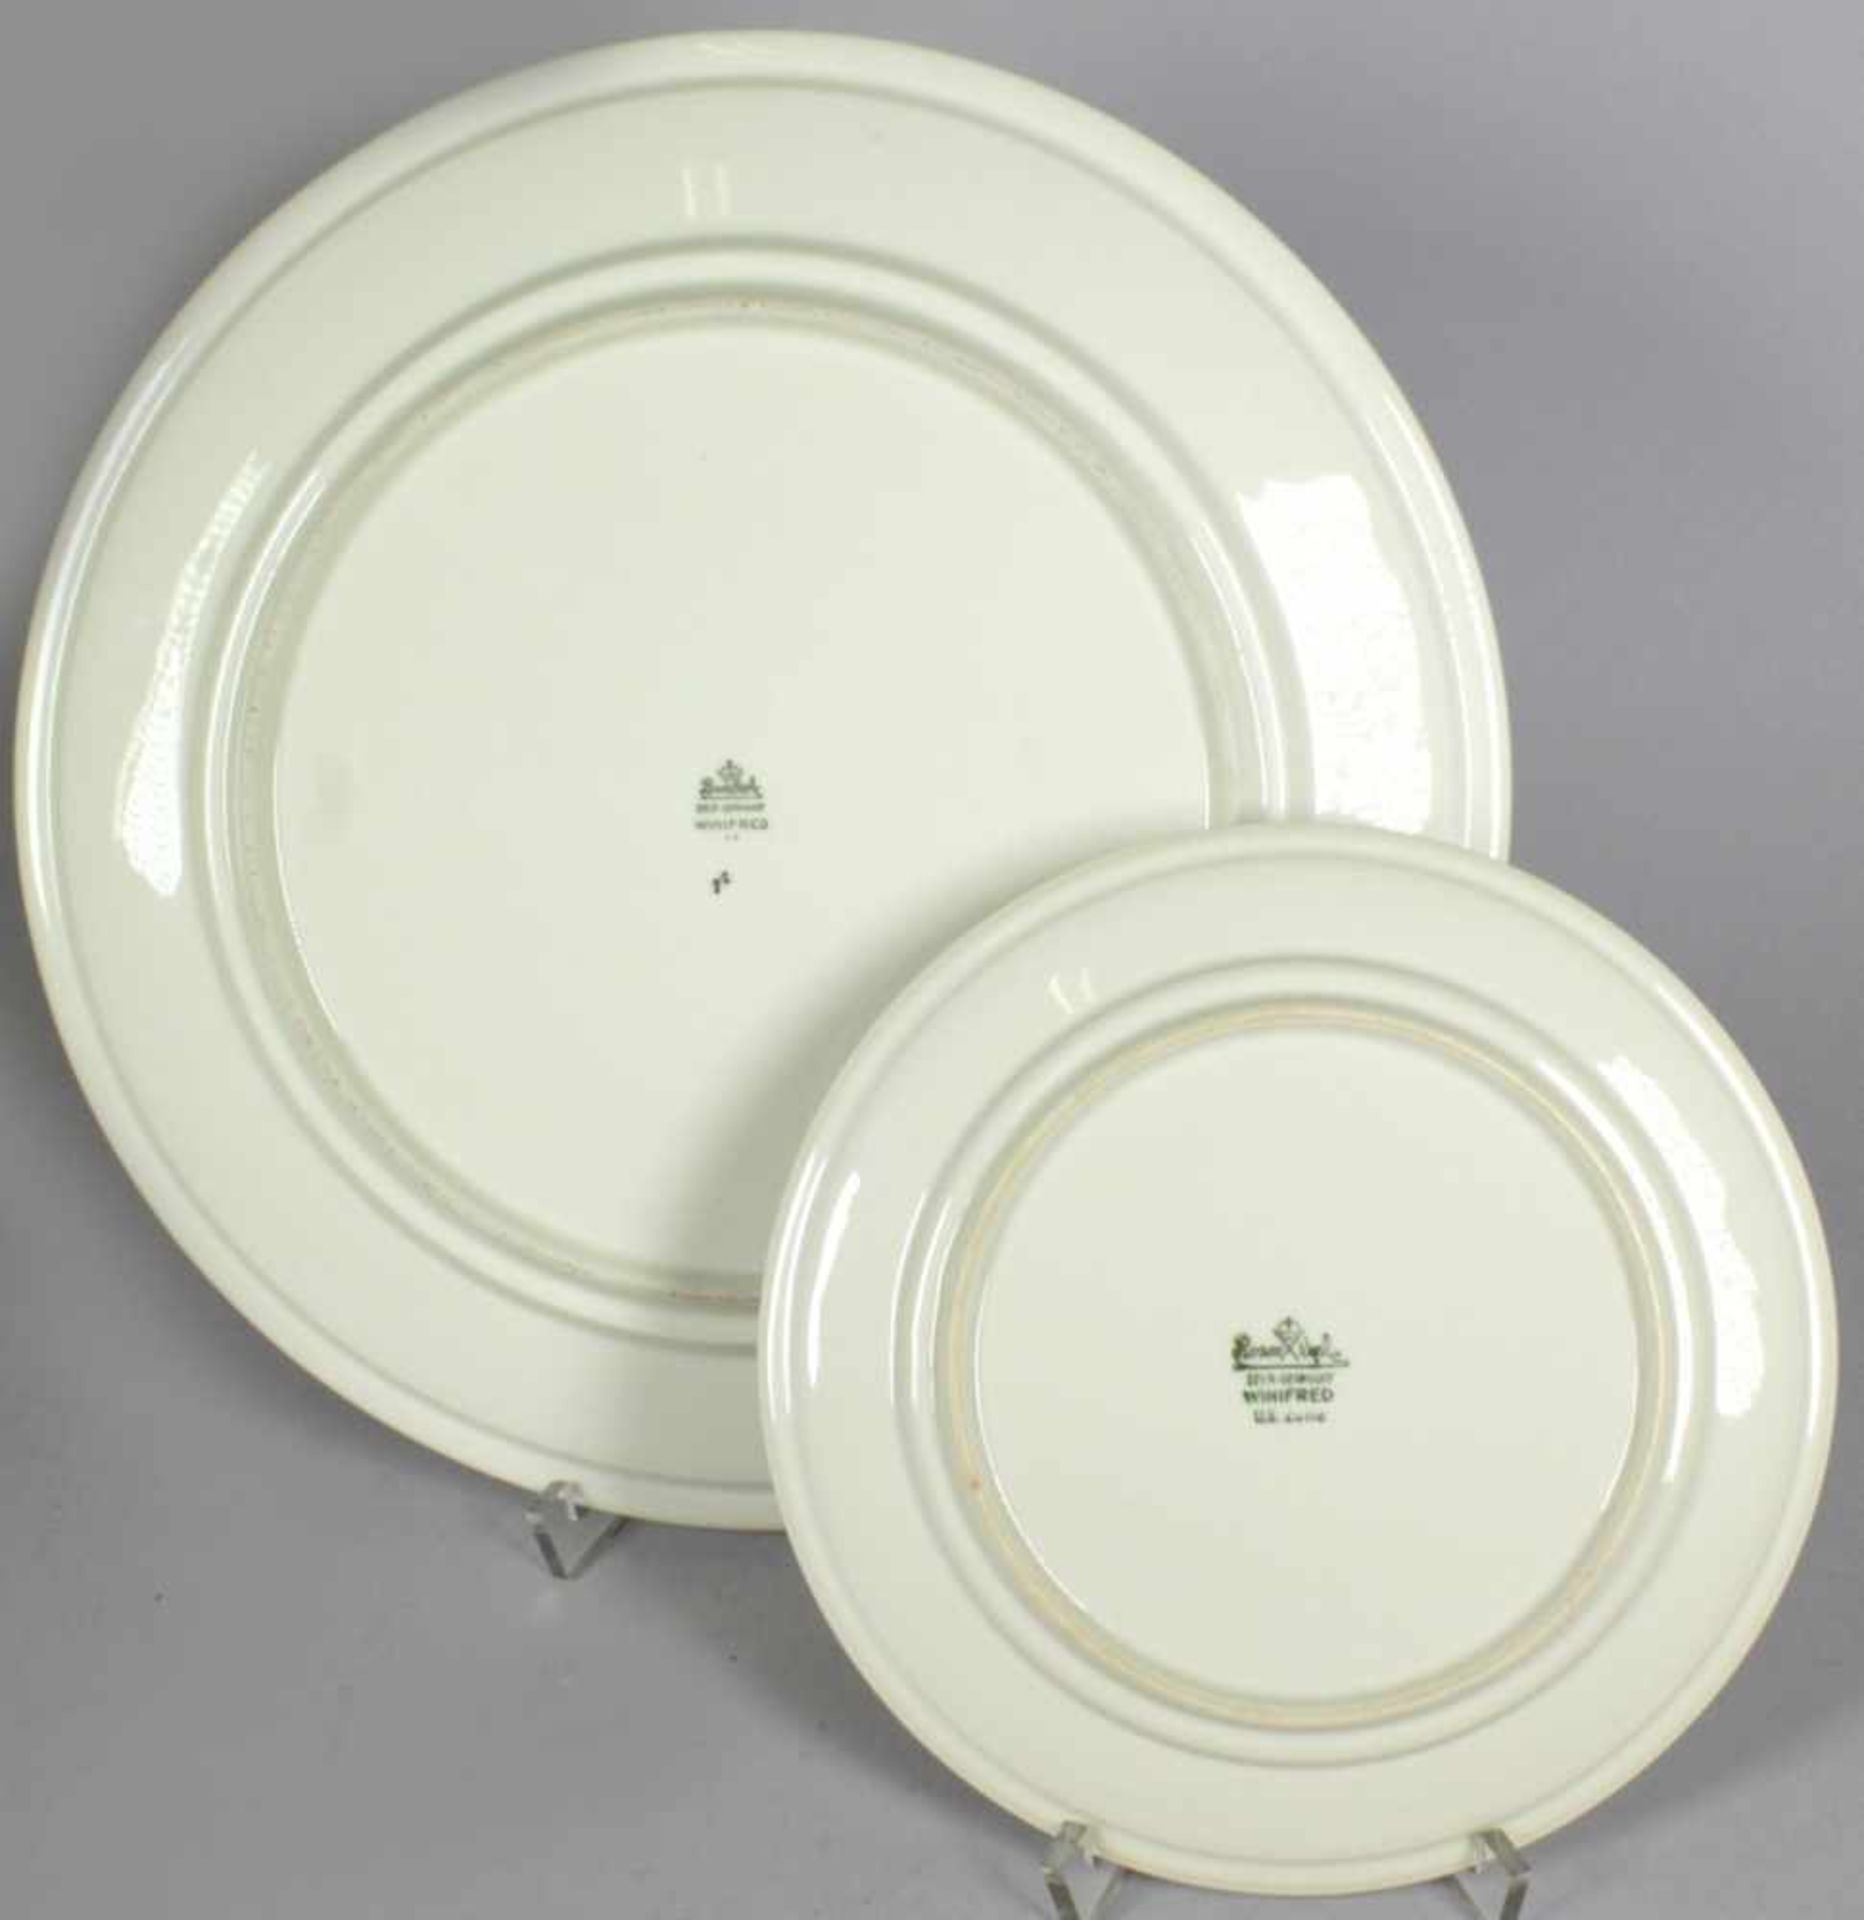 Porzellan-Anbieteteller mit sechs Tellern, Rosenthal, 1. Hälfte 20. Jh., rund, Dekor:Winifred, - Bild 2 aus 2